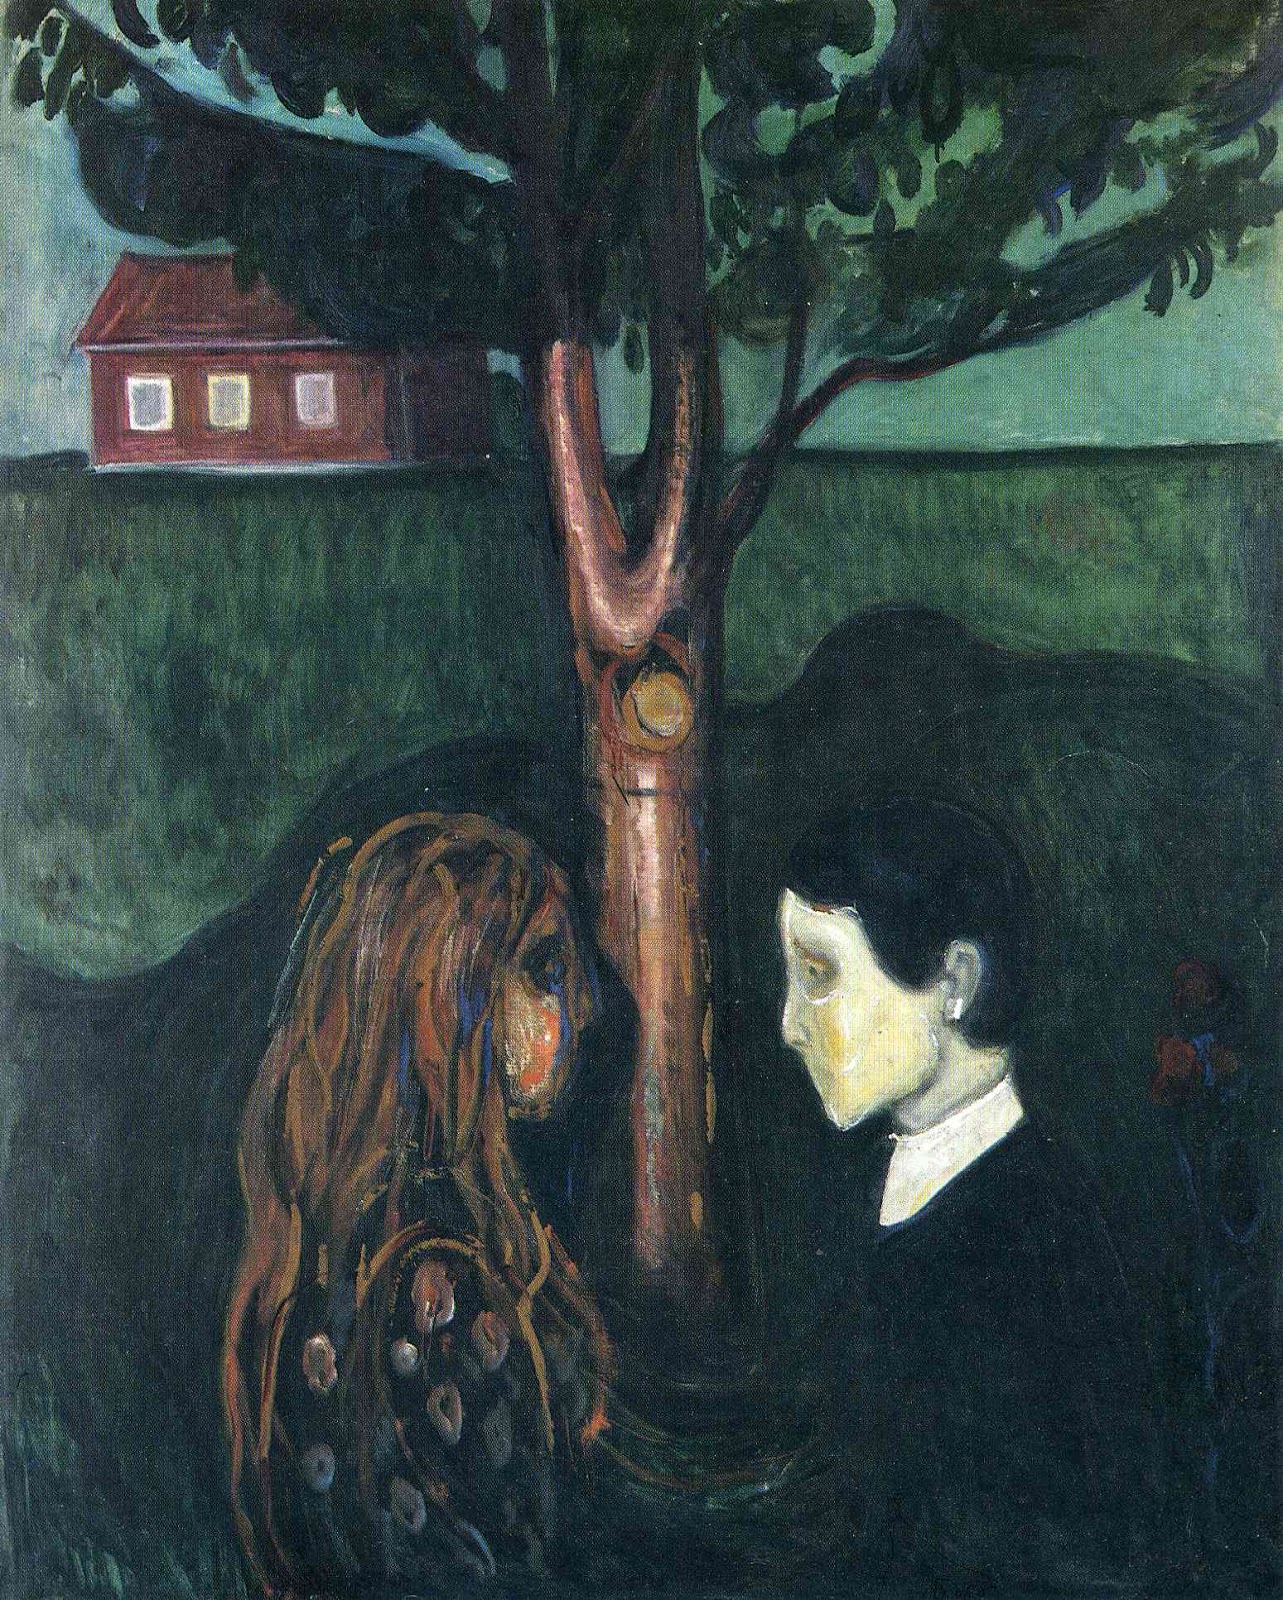 Edvard+Munch-1863-1944 (19).jpg